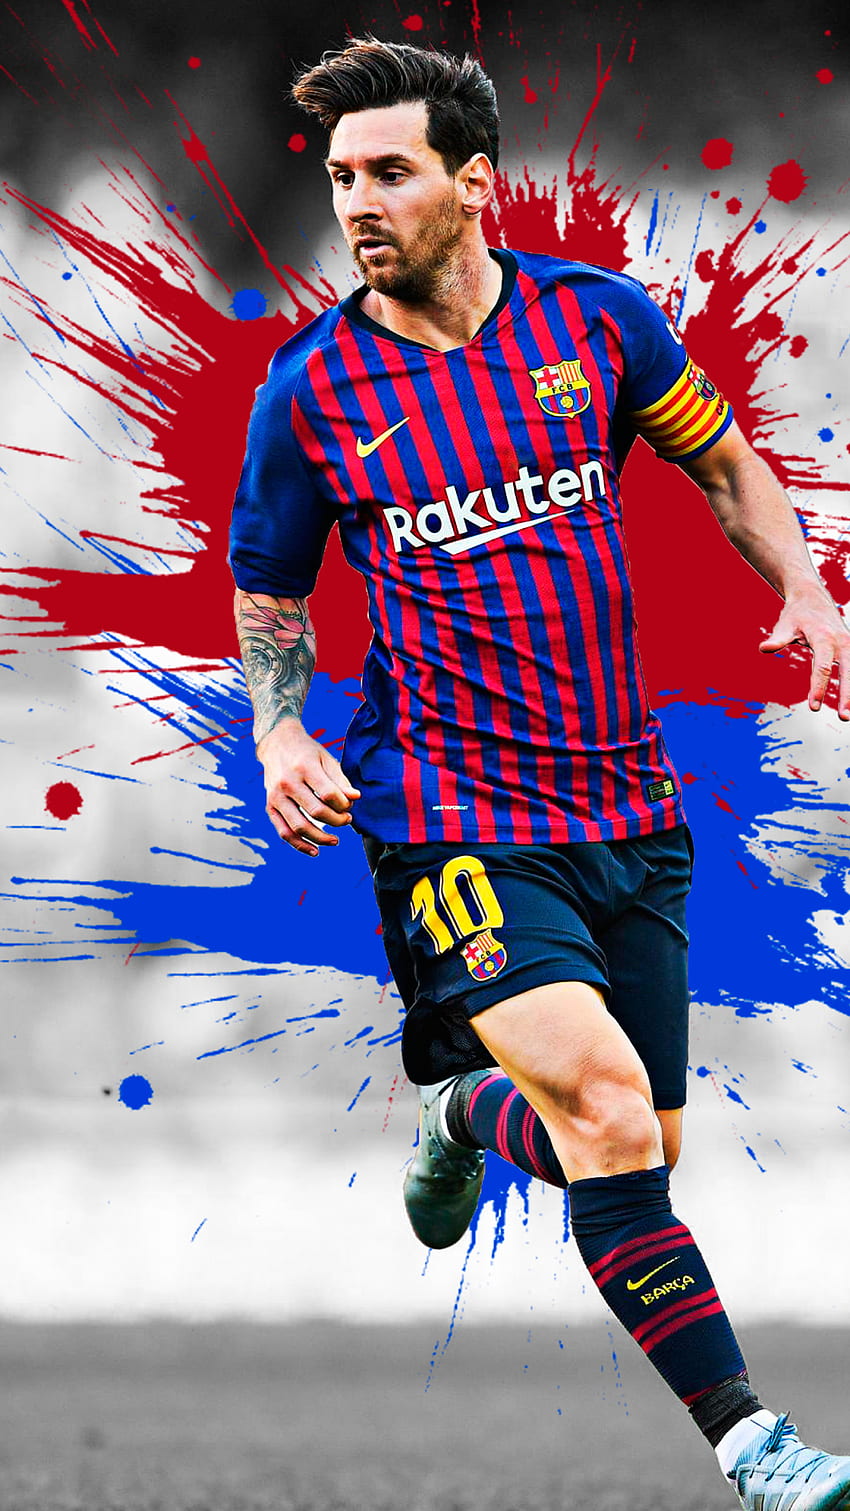 Nếu bạn là một fan hâm mộ của Lionel Messi, hẳn không thể bỏ qua bức hình nền này! Chỉ cần nhìn vào đó, bạn sẽ cảm nhận được tinh thần của một trong những cầu thủ vĩ đại nhất mọi thời đại trong lịch sử bóng đá.